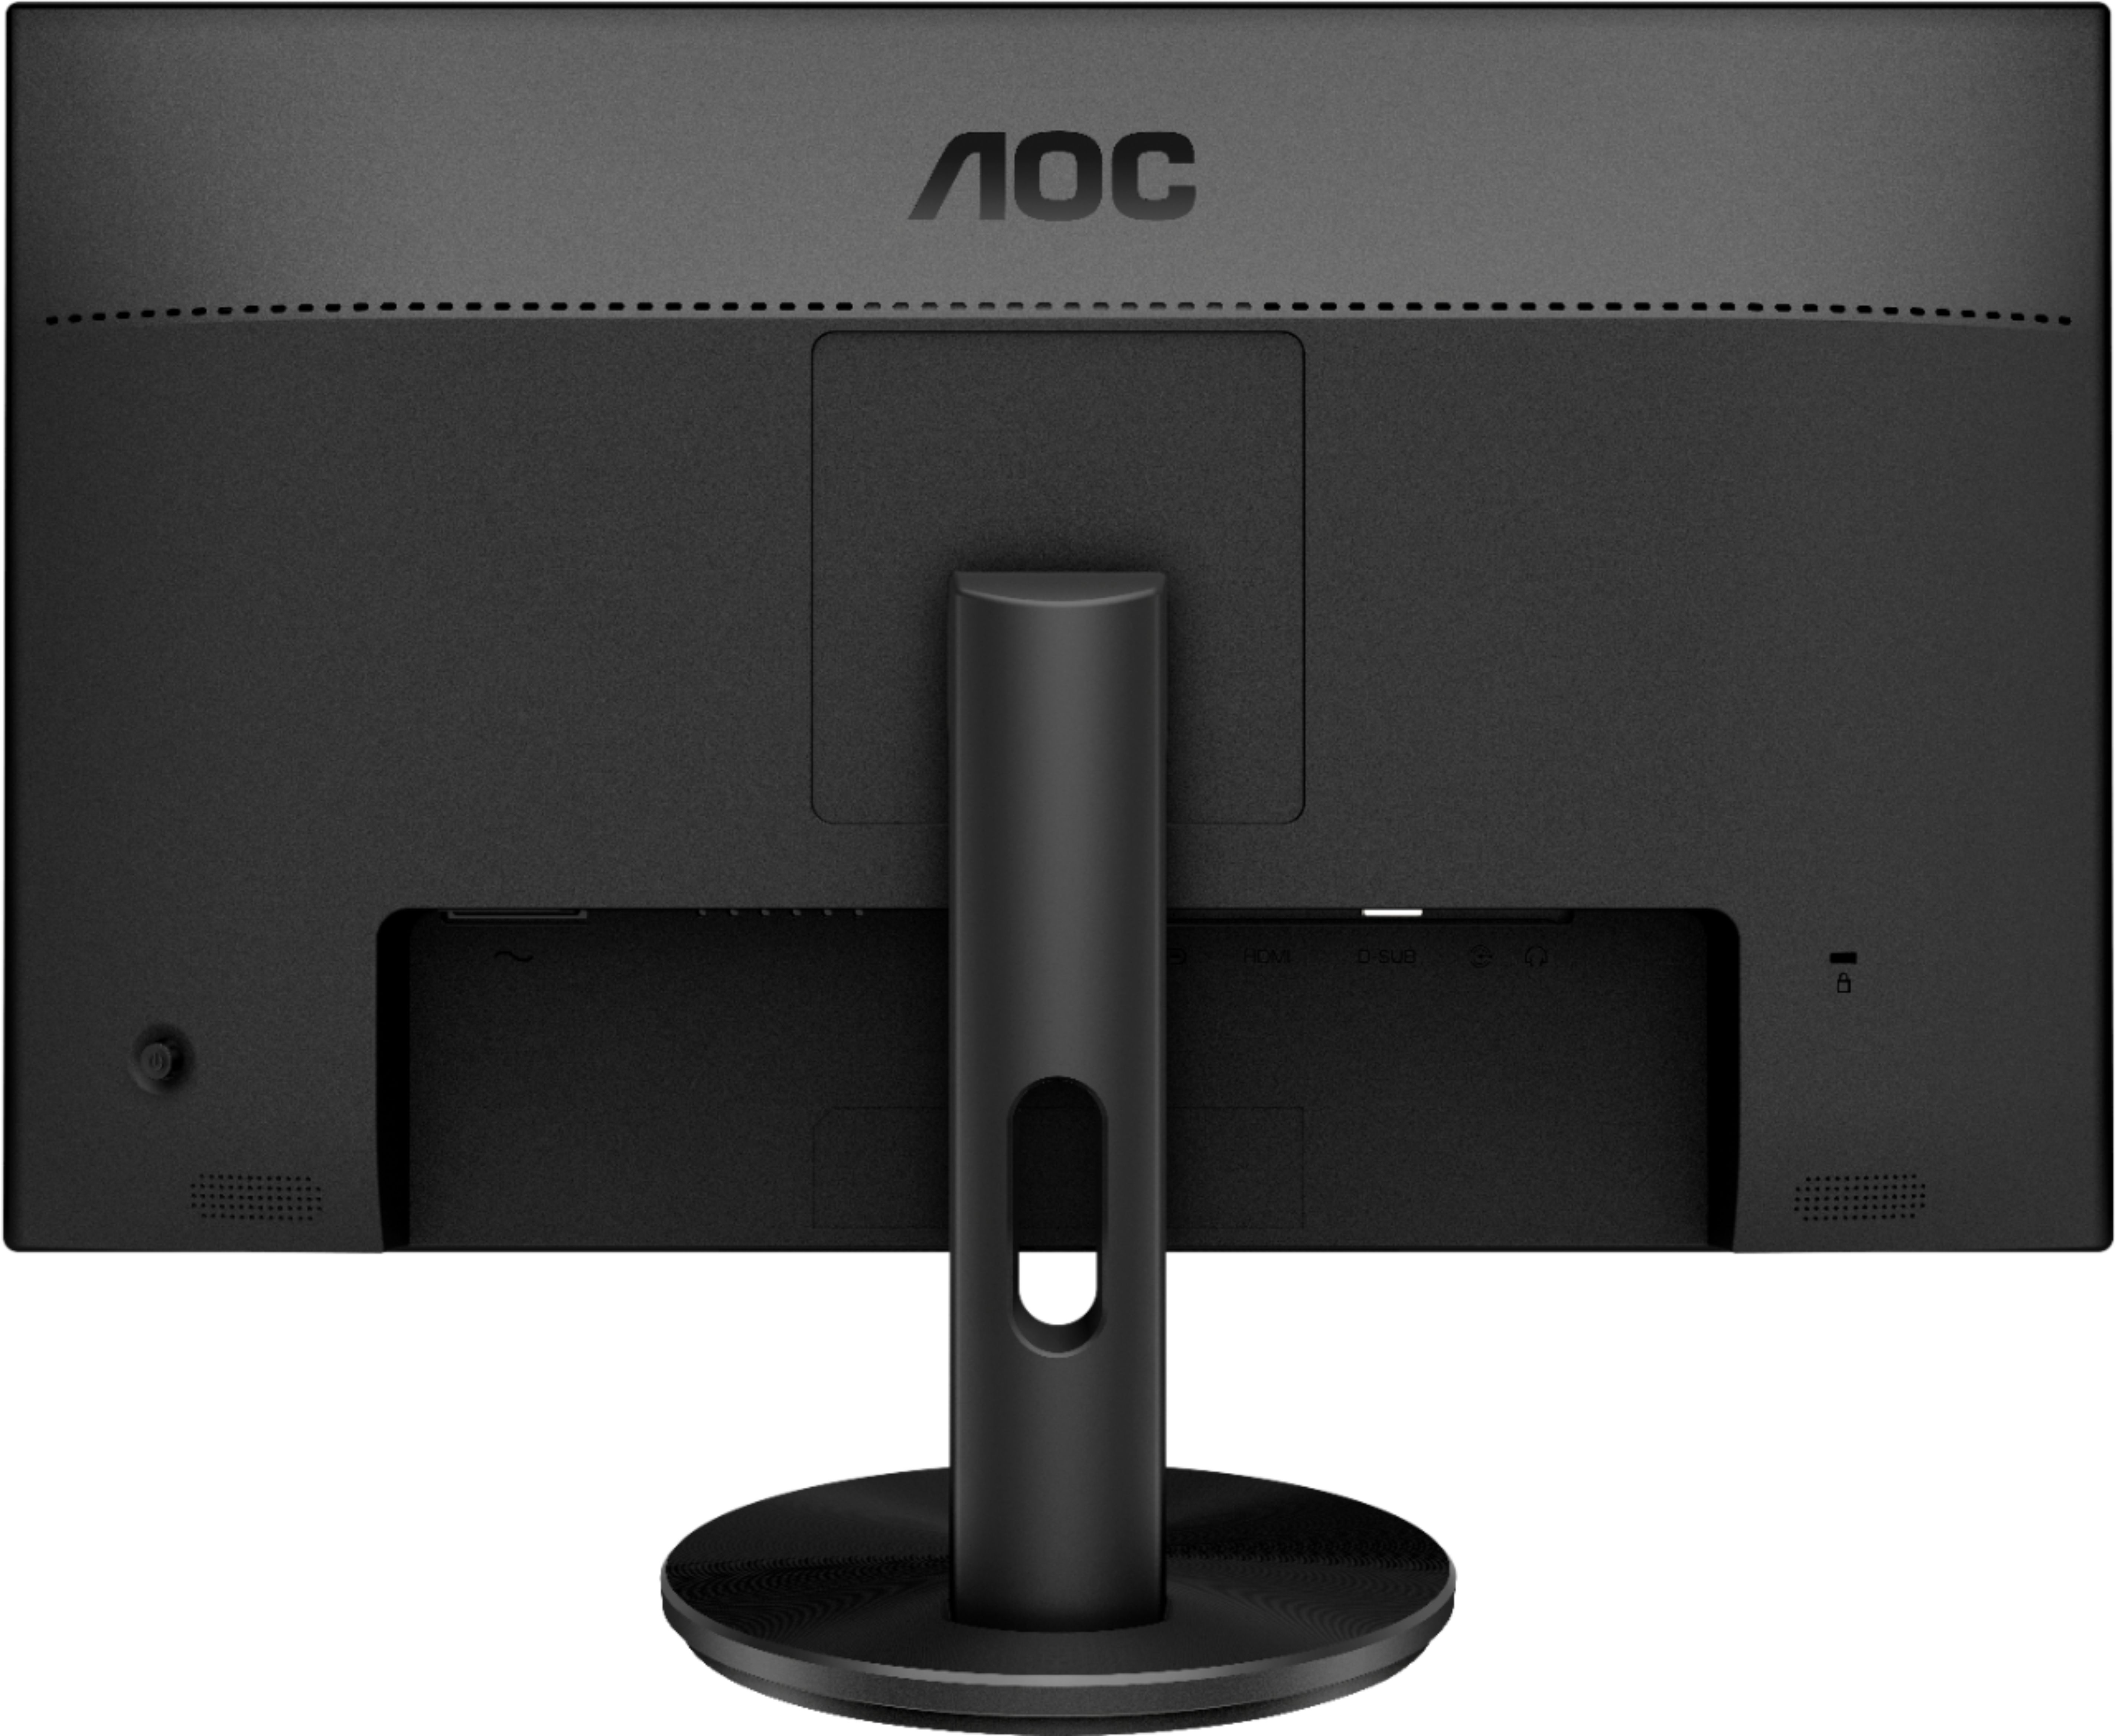 Aoc G2590fx 24 5 Led Fhd Freesync Monitor Displayport Hdmi Vga Black G2590fx Best Buy